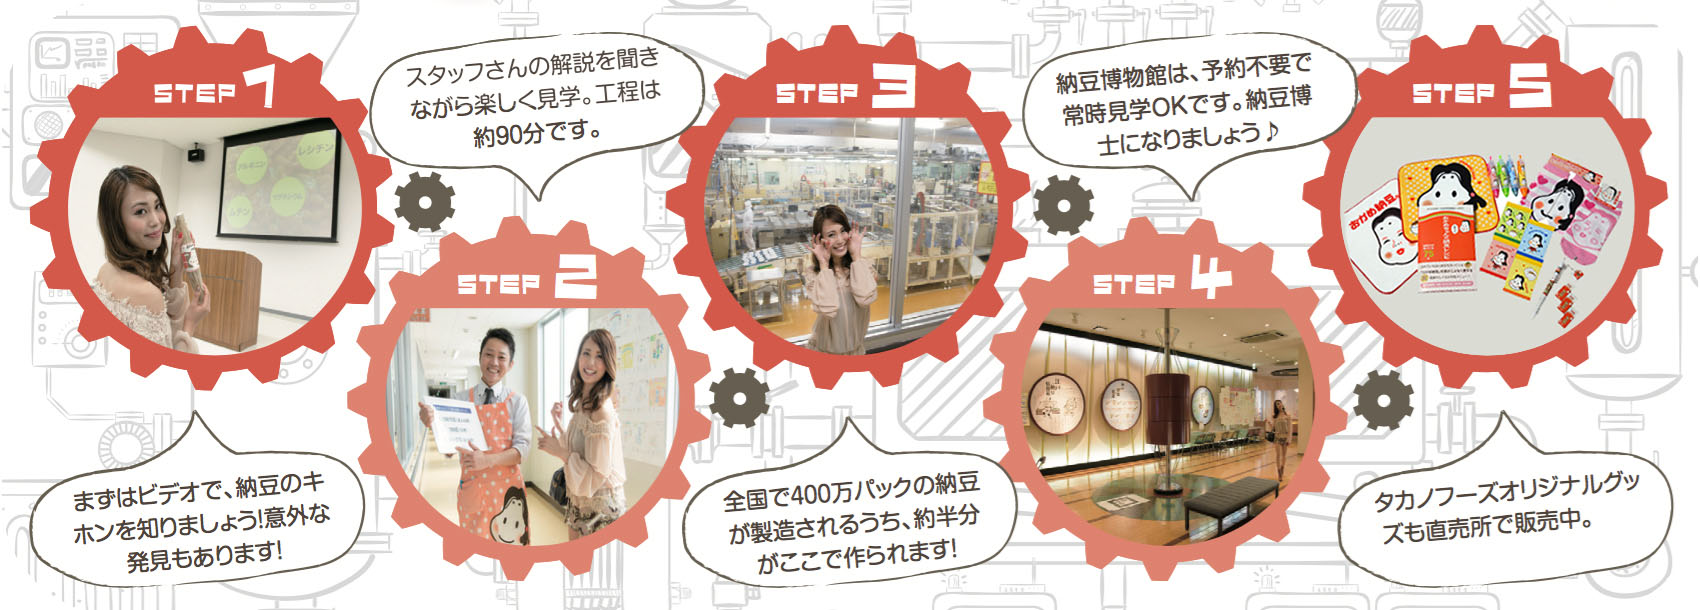 タカノフーズ-納豆博物館工程表